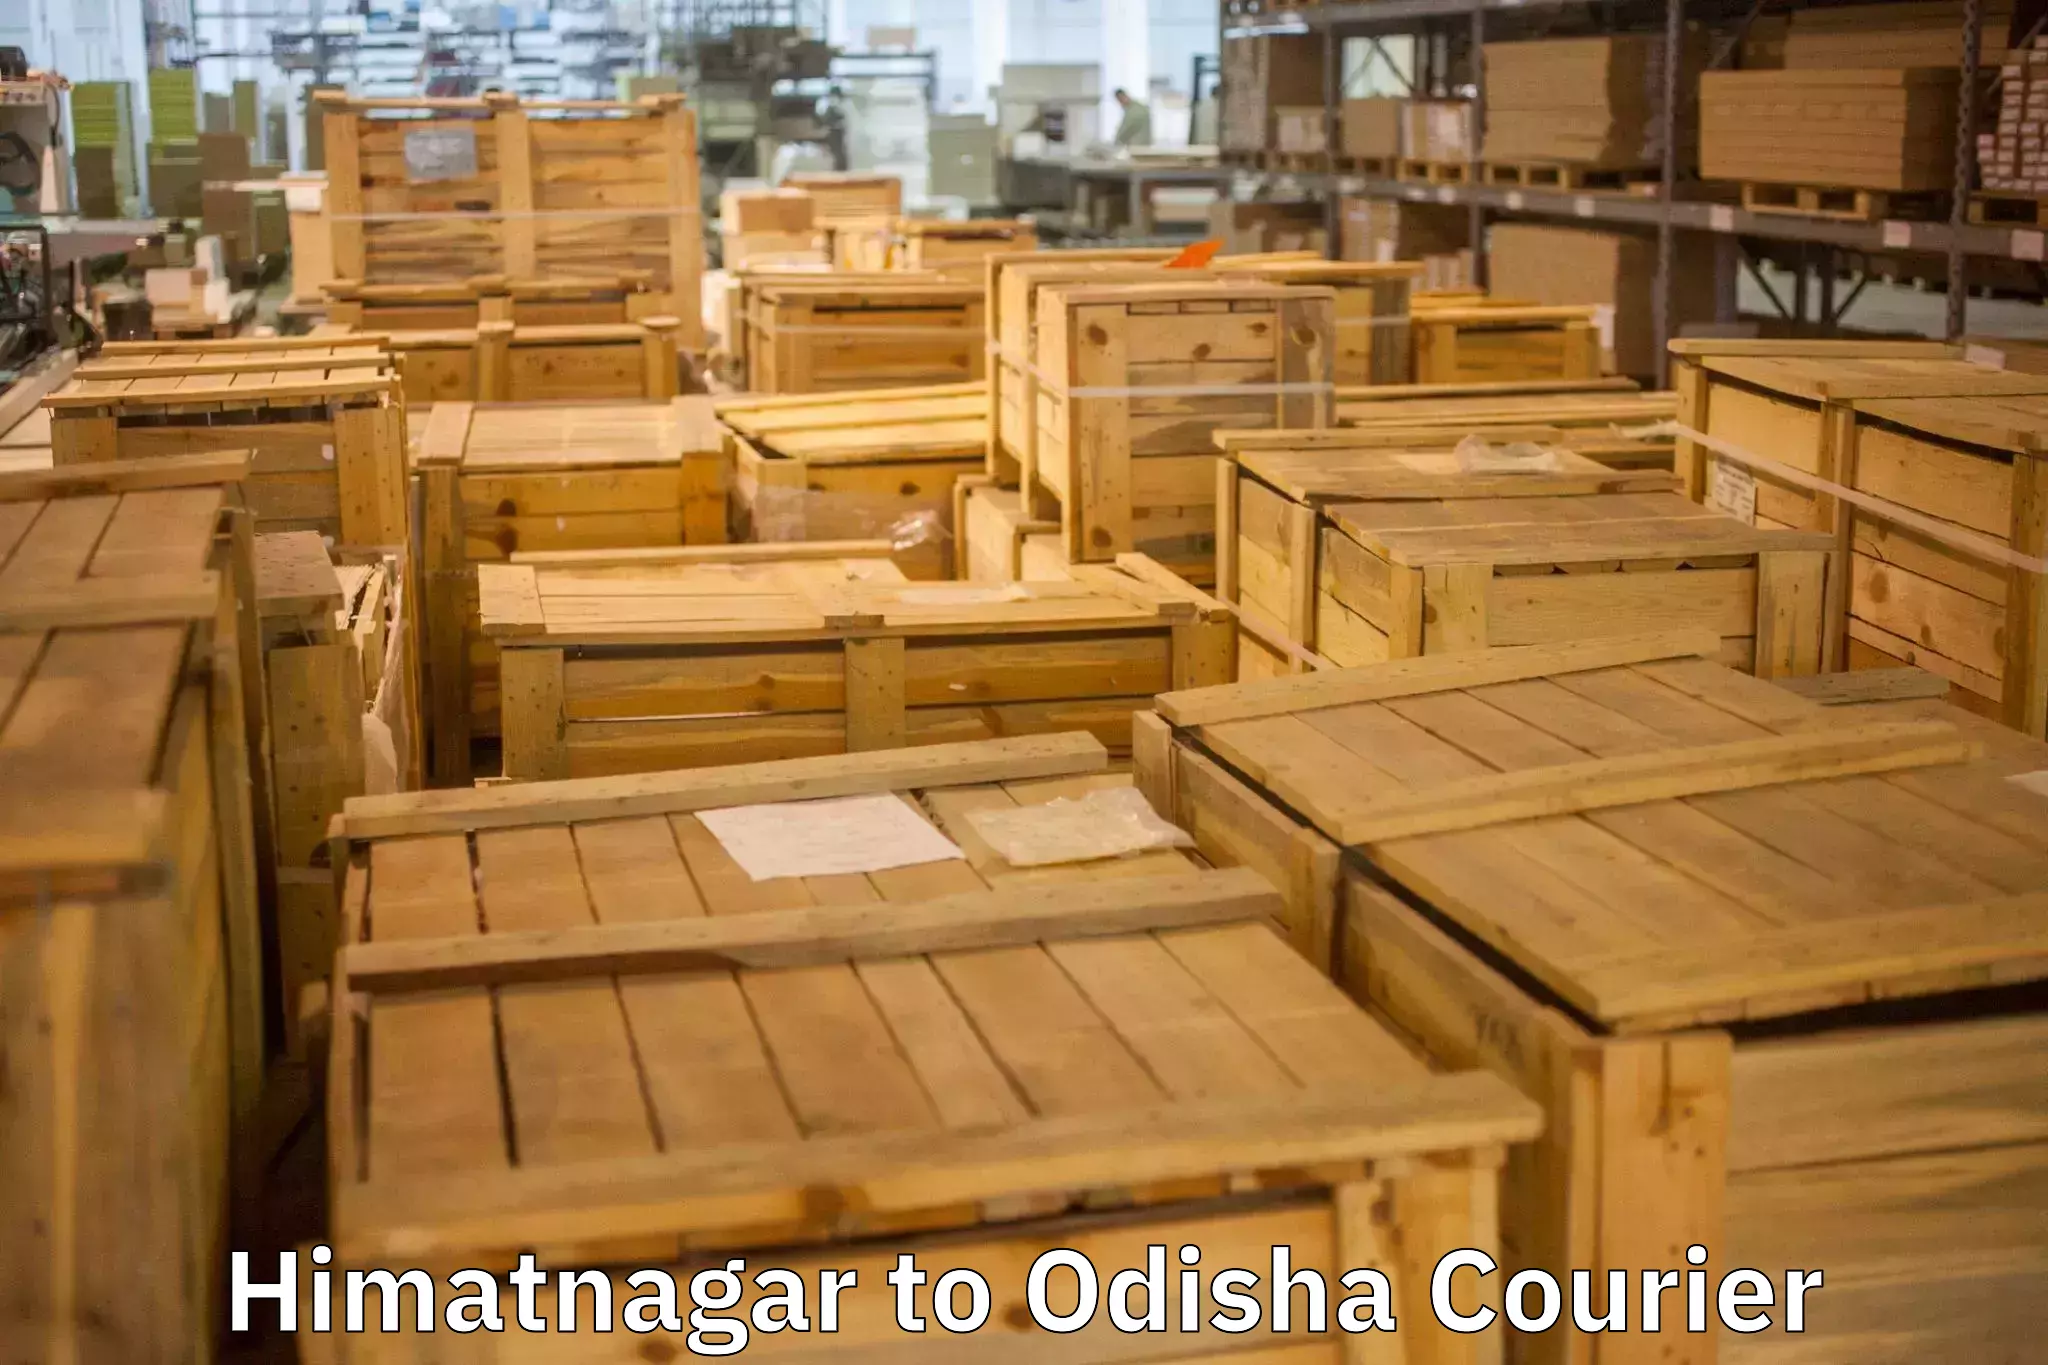 Professional moving company Himatnagar to Kandhamal